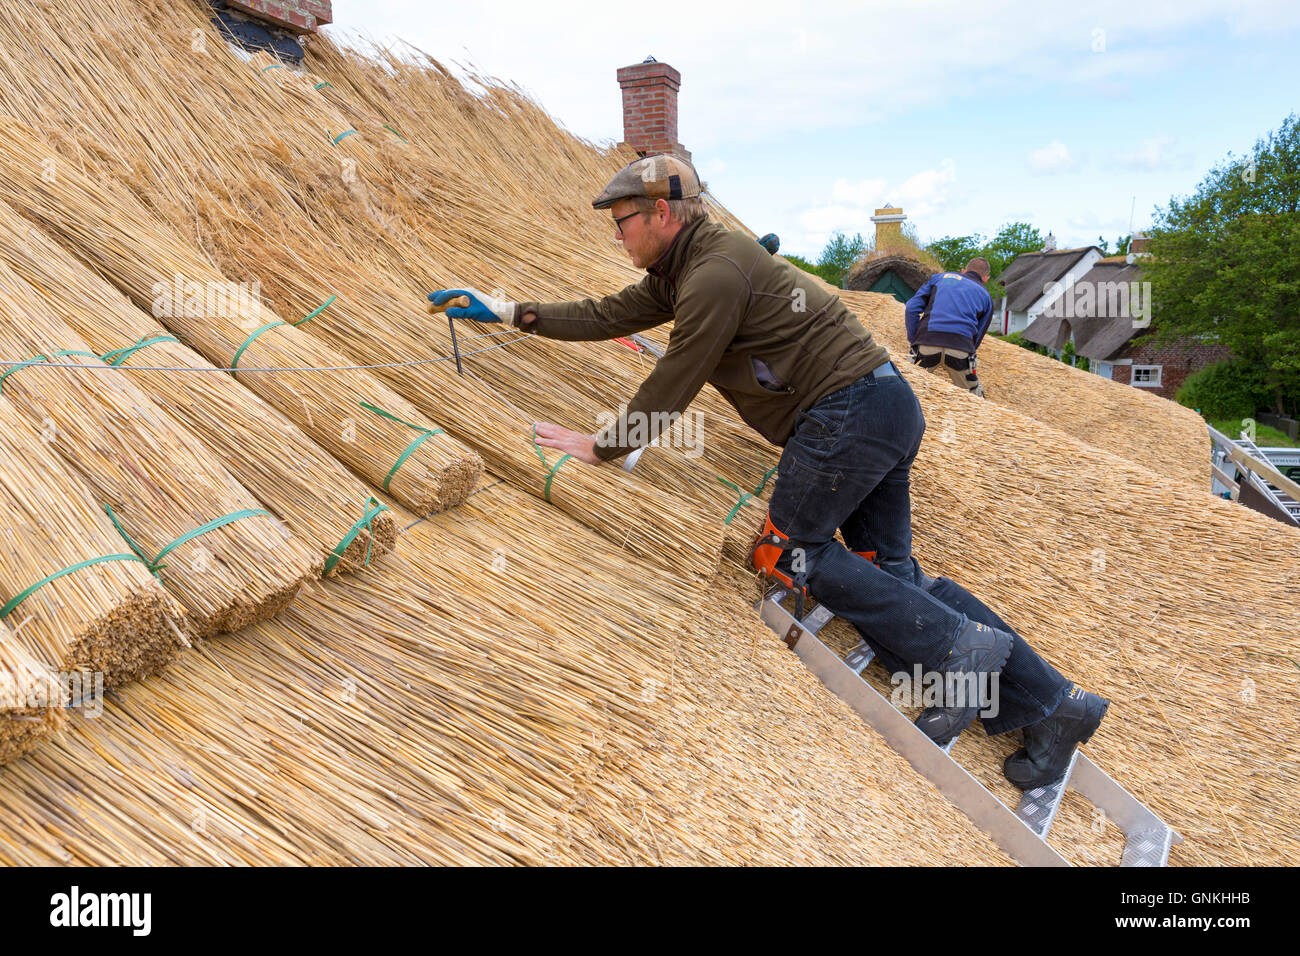 Nouveau toit de chaume Thatchers méthode traditionnelle avec meules de roseaux/se précipite sur la chaumière à l'île de Fano, Danemark Banque D'Images